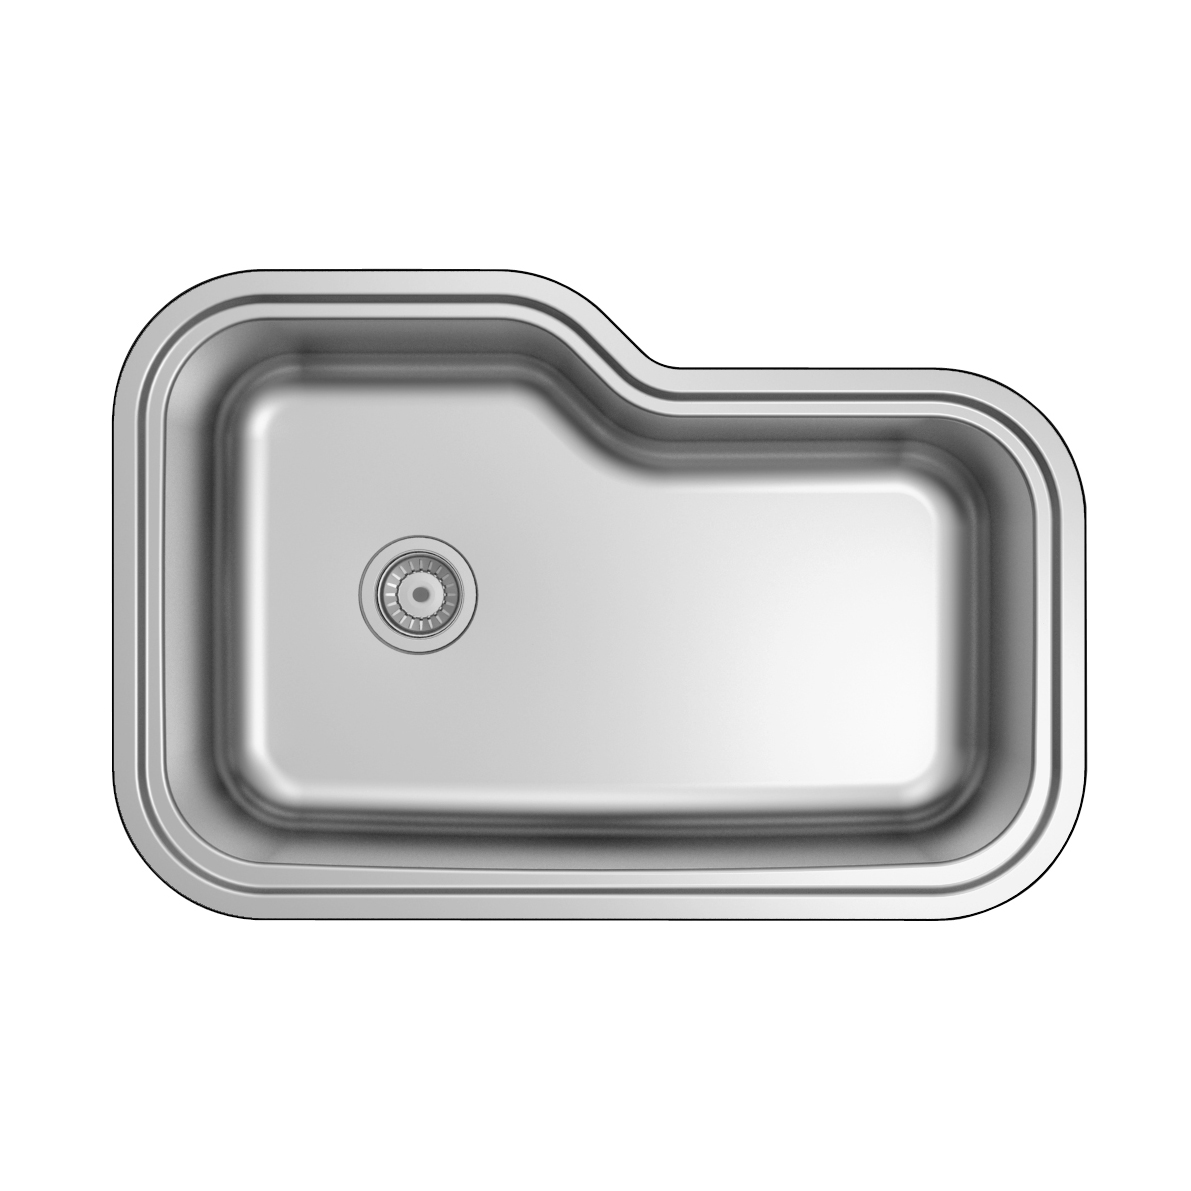 Fregadero de cocina estirado a presión de un tazón rectangular de acero inoxidable